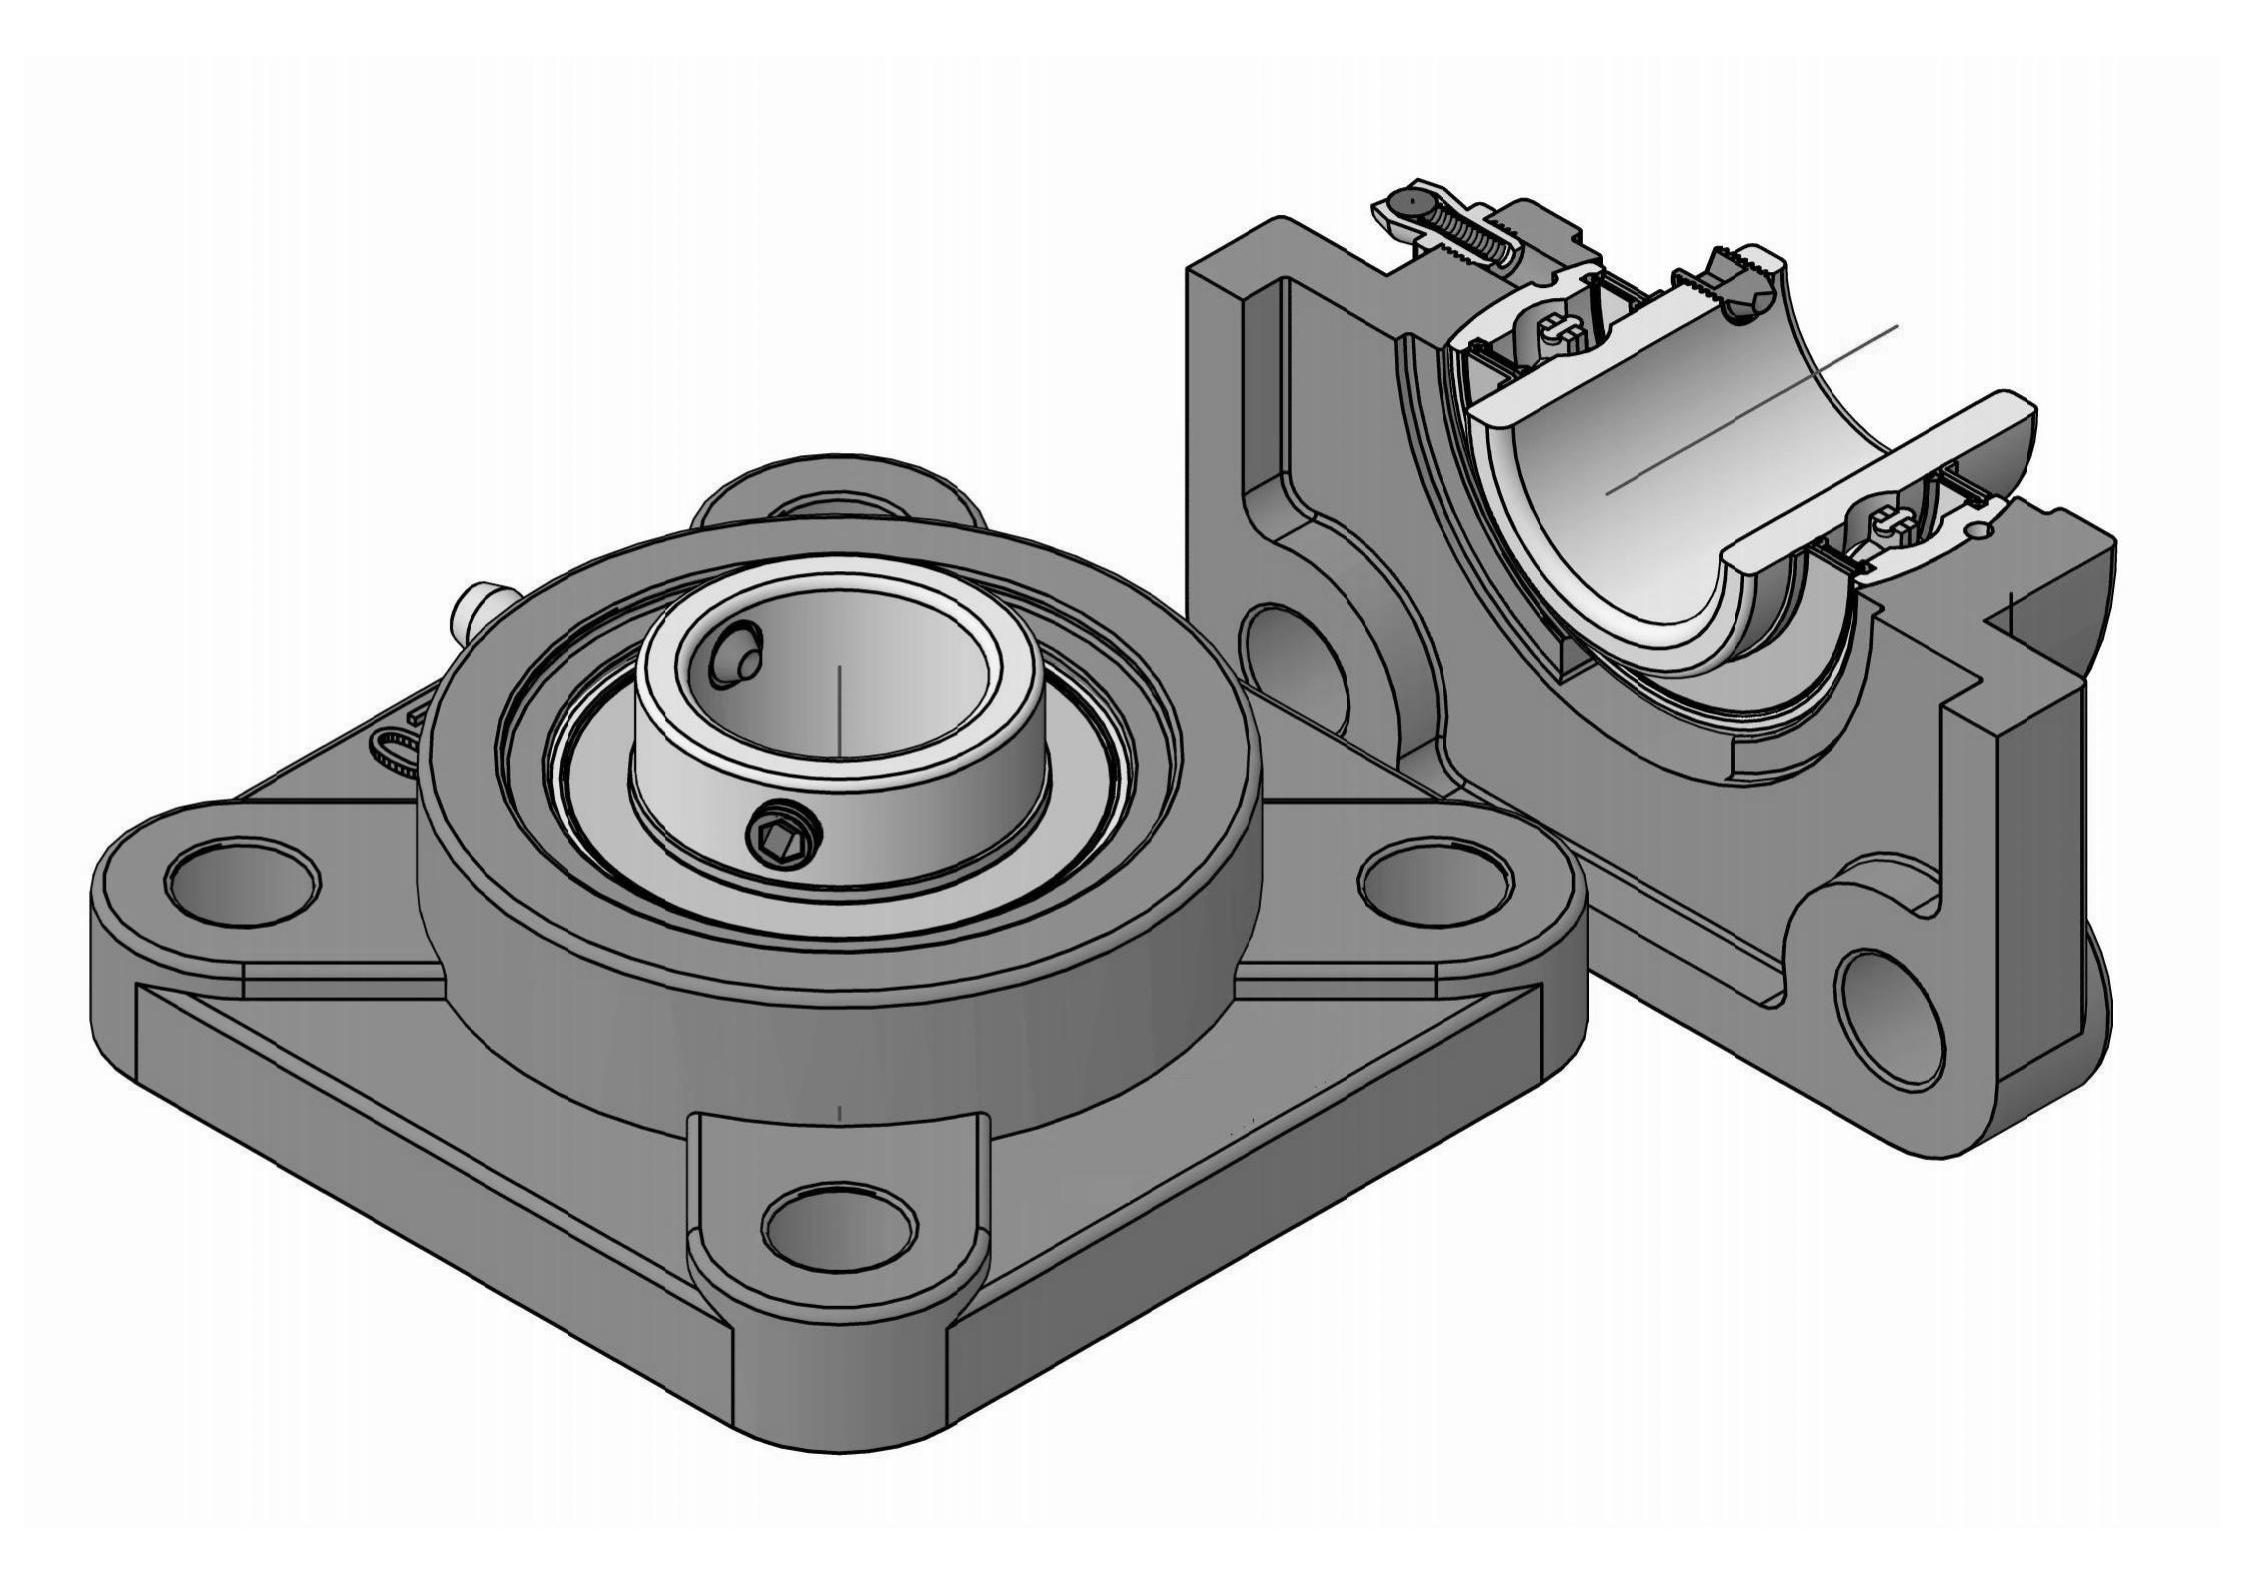 UCF214-42 apat na Bolt Square flange bearing unit na may 2-5/8 inch mm bore